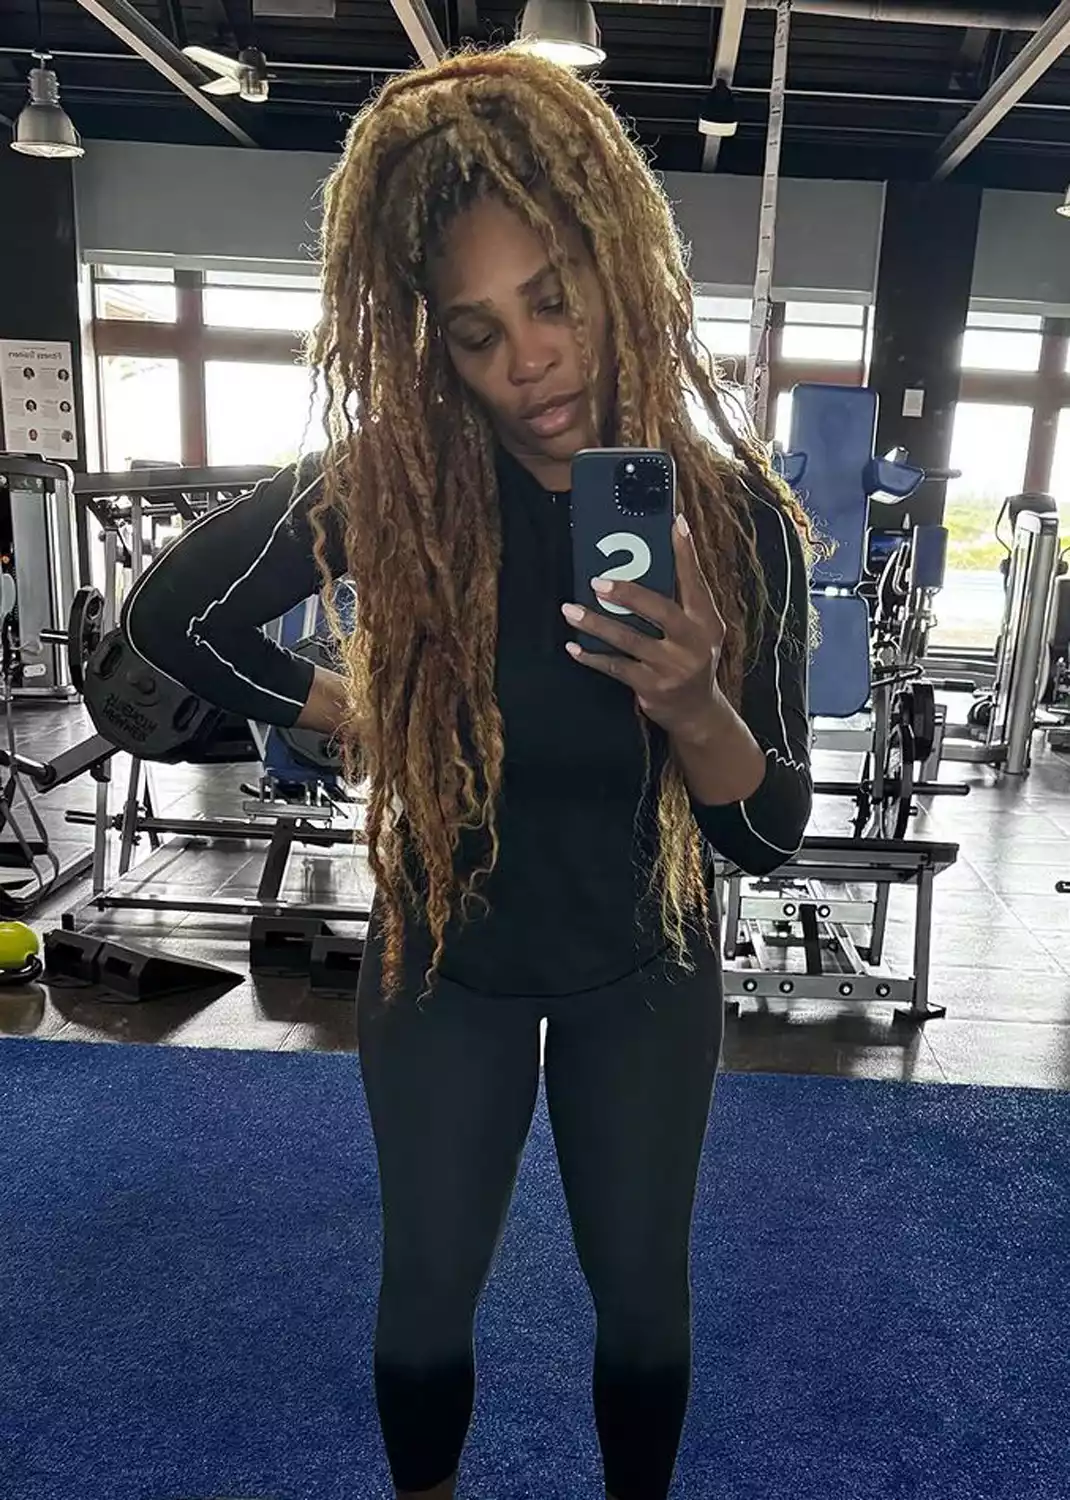 Serena Williams gym selfies